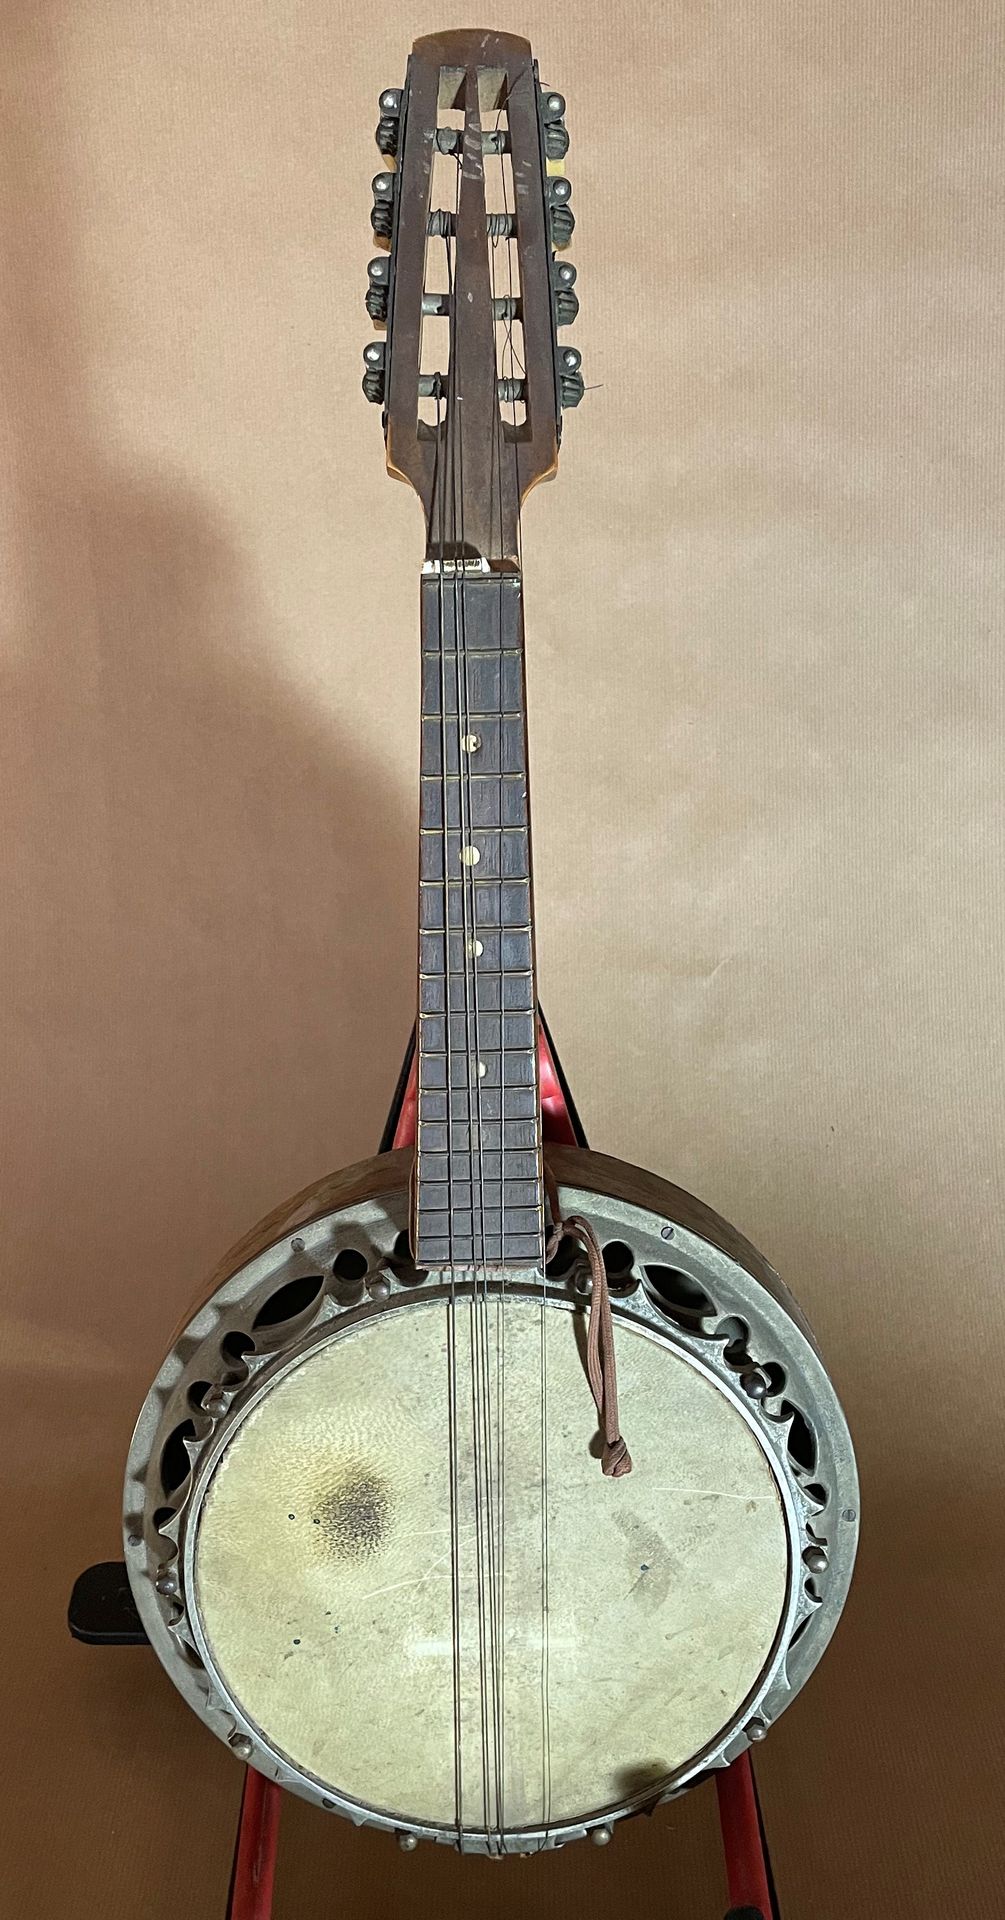 Null Mandolina banjo completa con su puente, mecánica

Interesante decoración de&hellip;